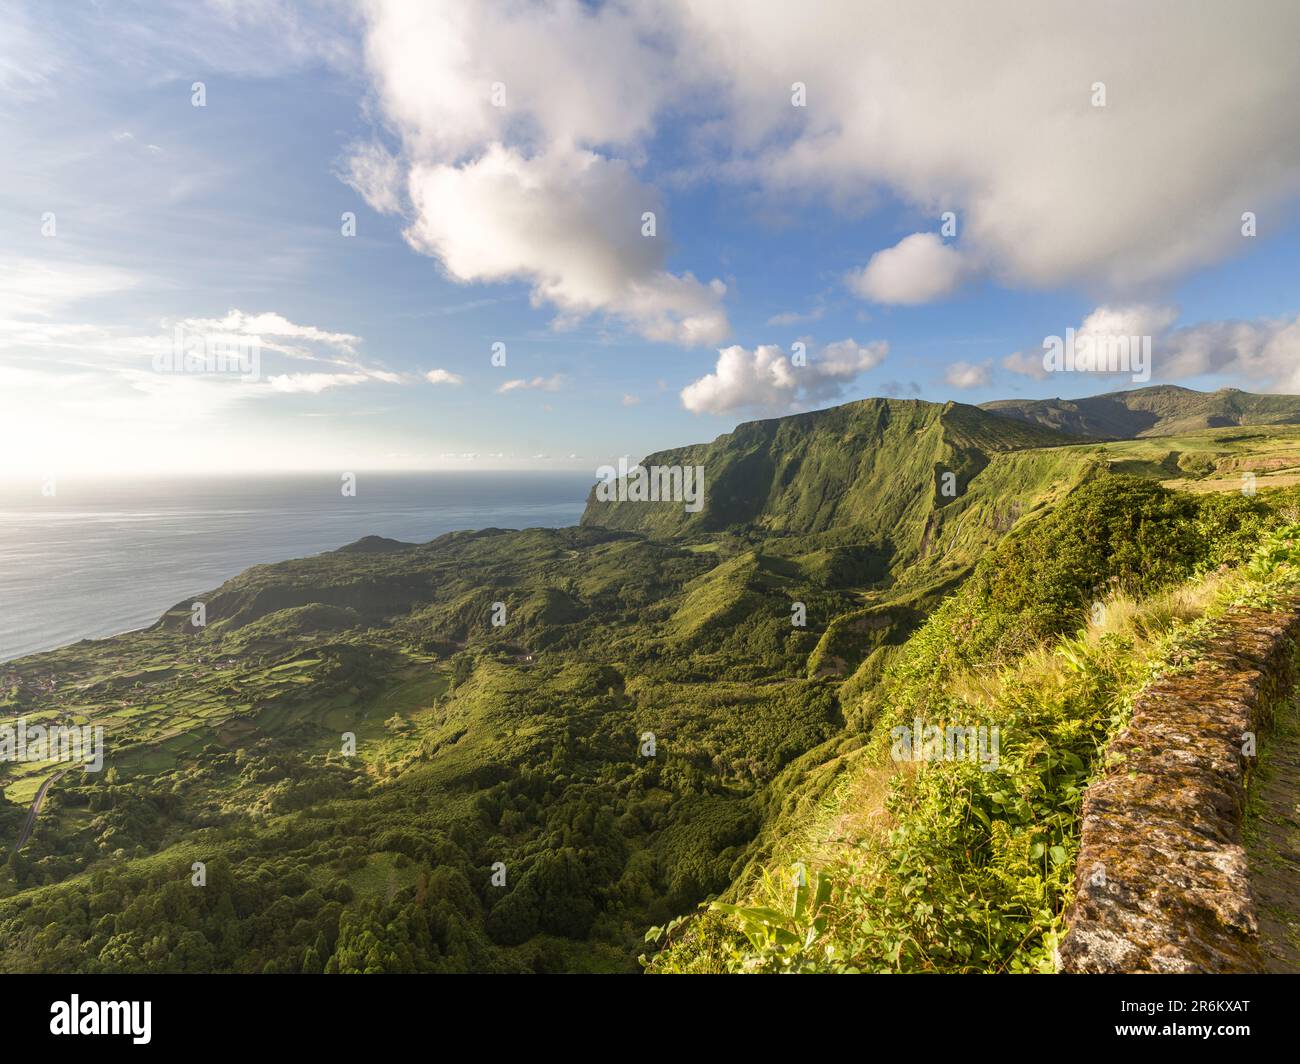 Grüne Berge an einem sonnigen Abend von Miradouro Craveiro Lopes auf Flores Island, Azoren Inseln, Portugal, Atlantik, Europa Stockfoto